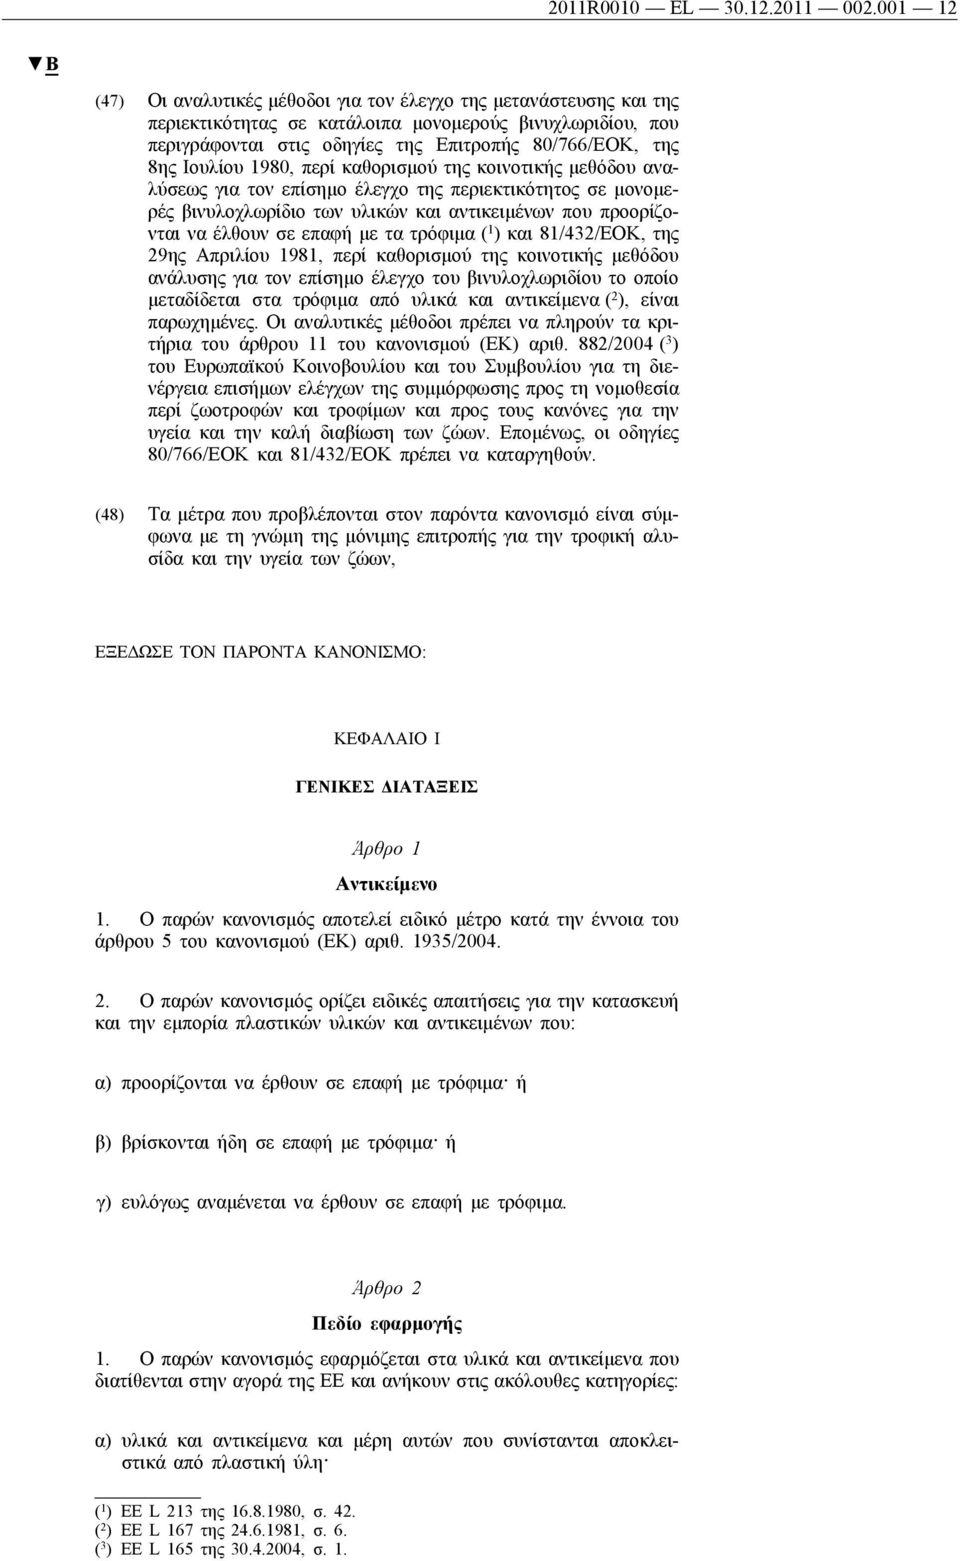 Ιουλίου 1980, περί καθορισμού της κοινοτικής μεθόδου αναλύσεως για τον επίσημο έλεγχο της περιεκτικότητος σε μονομερές βινυλοχλωρίδιο των υλικών και αντικειμένων που προορίζονται να έλθουν σε επαφή